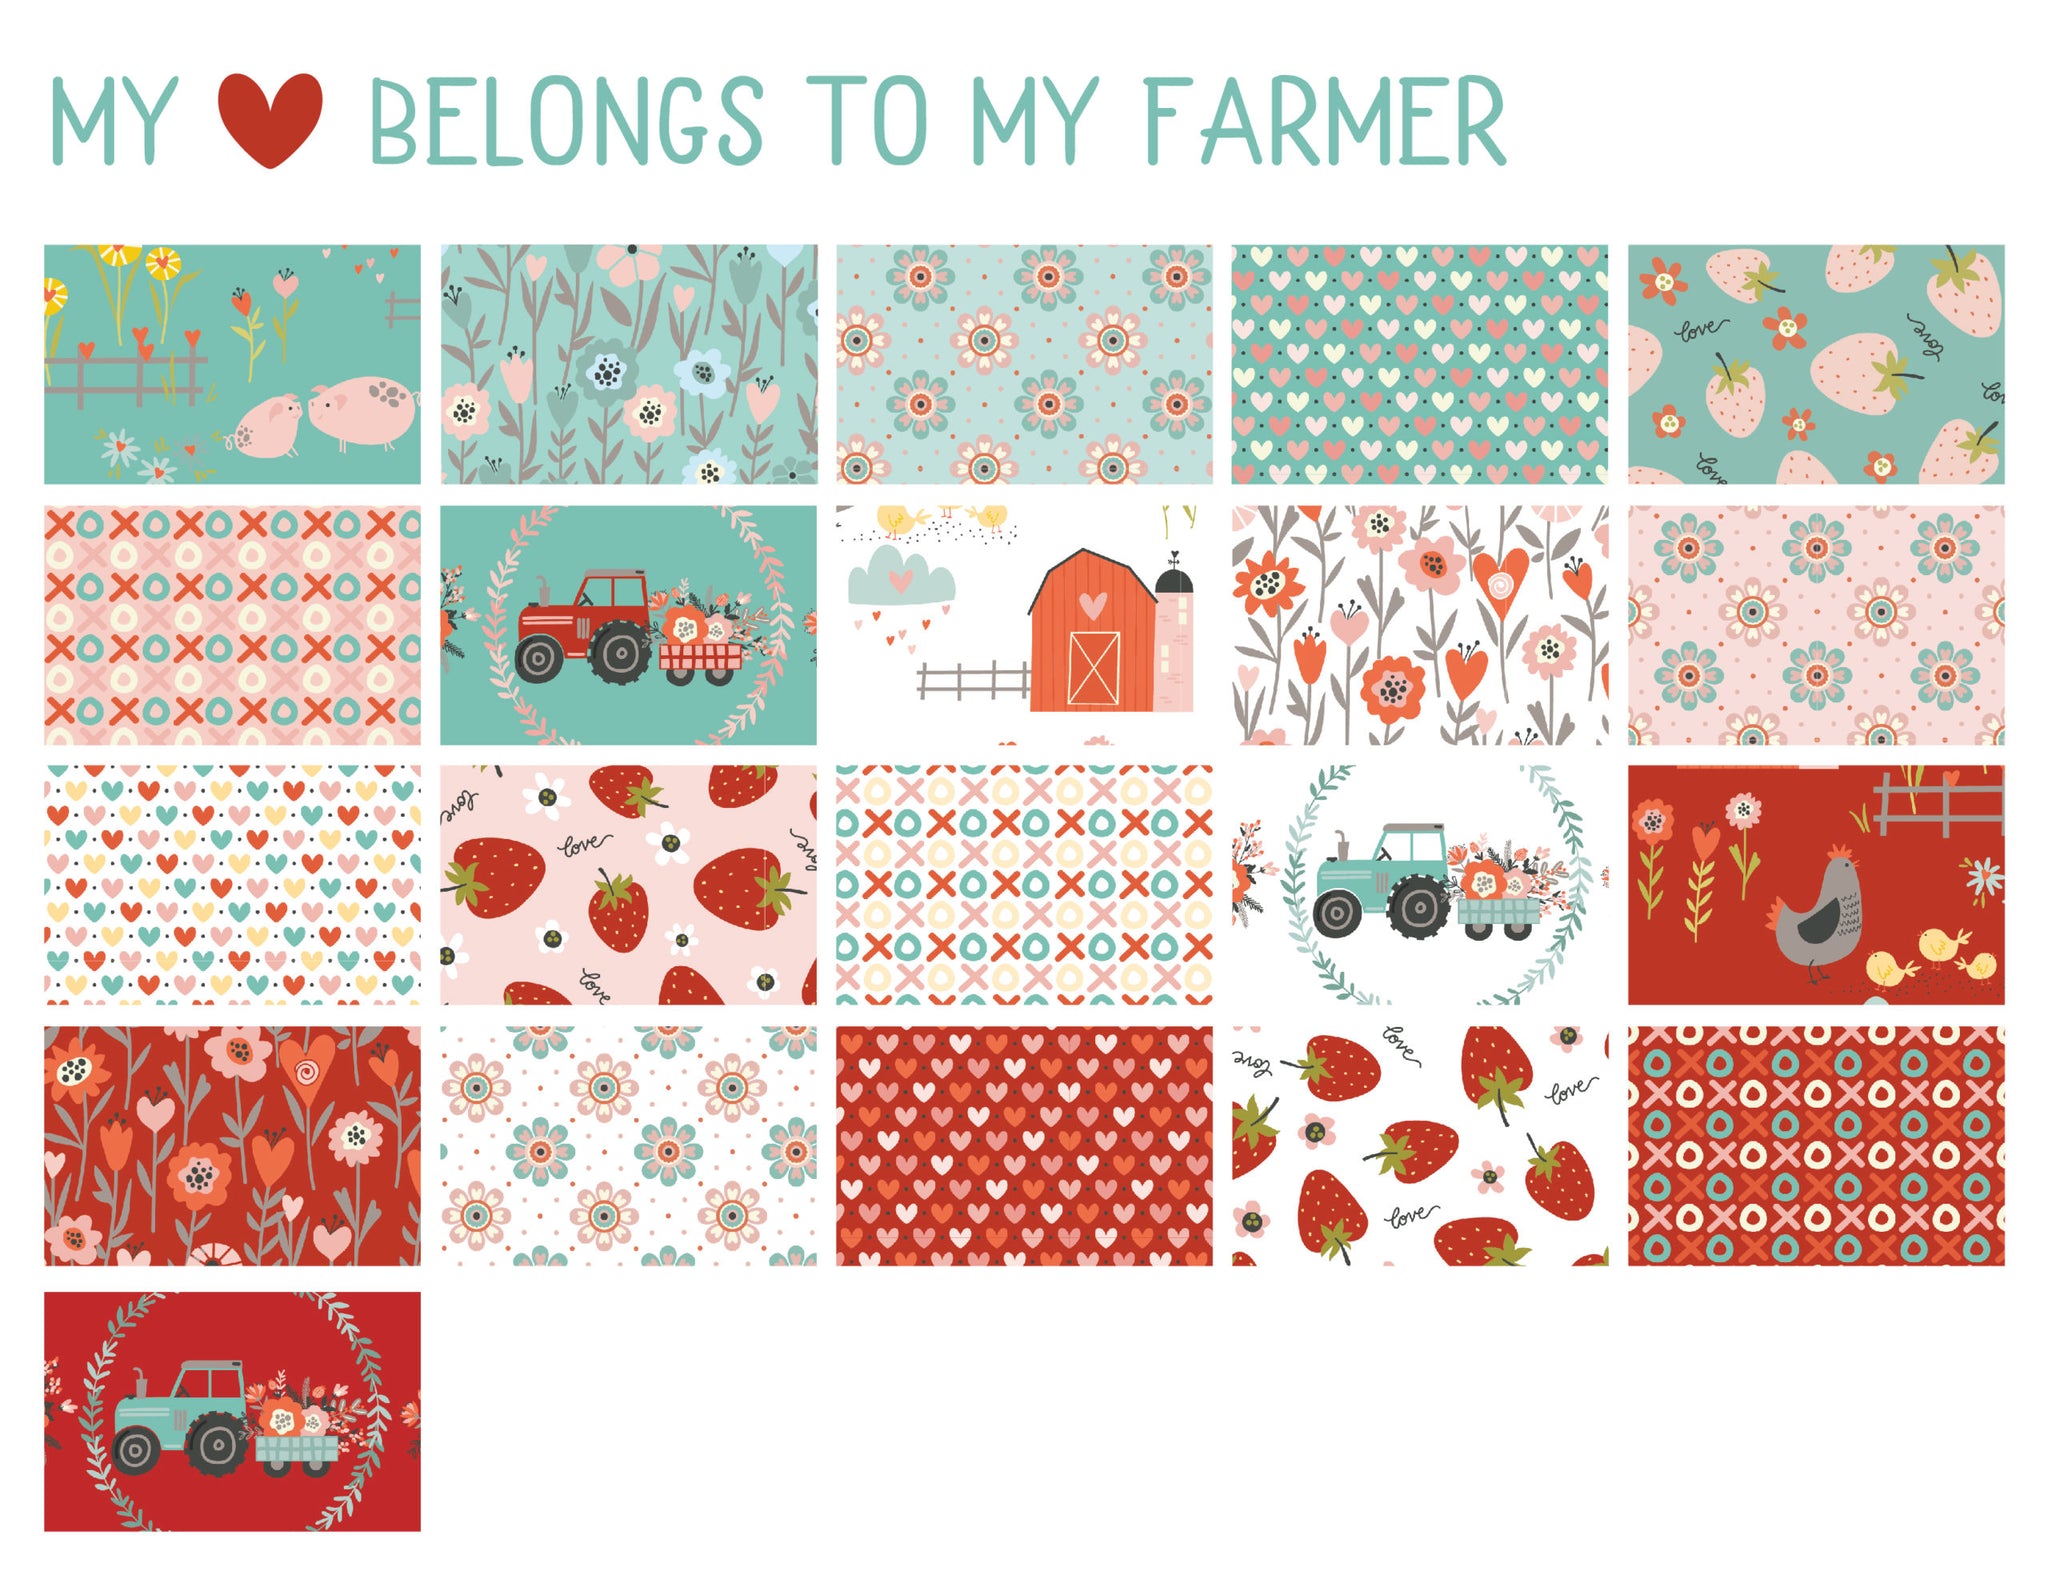 My Heart Belongs to My Farmer 10" precuts by Poppie Cotton